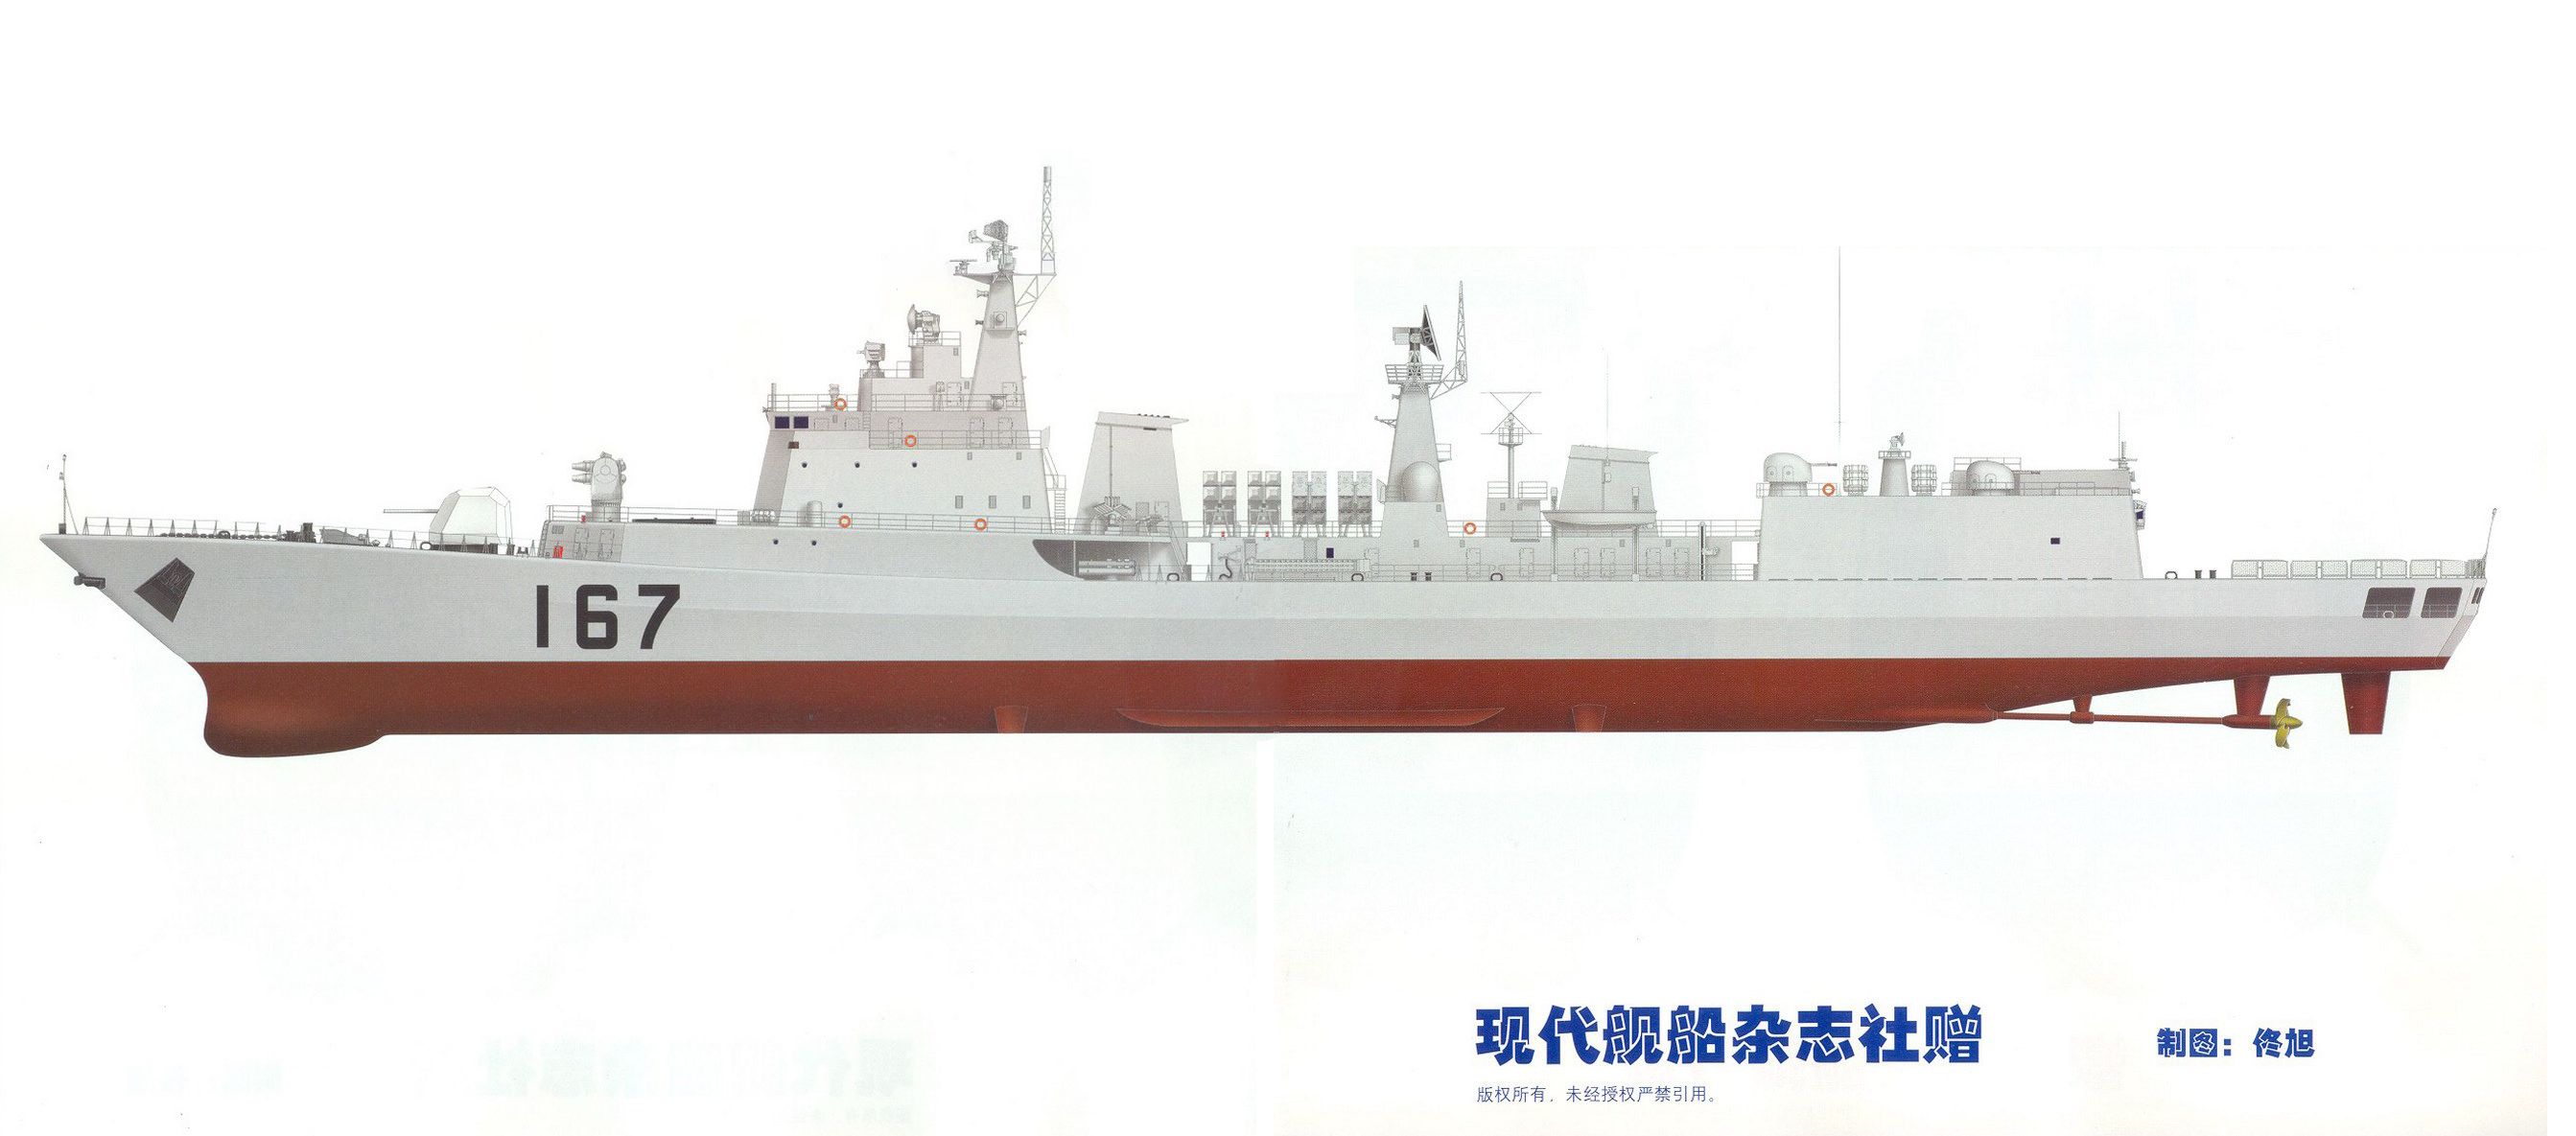 1706455372 531 Shenzhen DDG 167 Type 051B destroyer